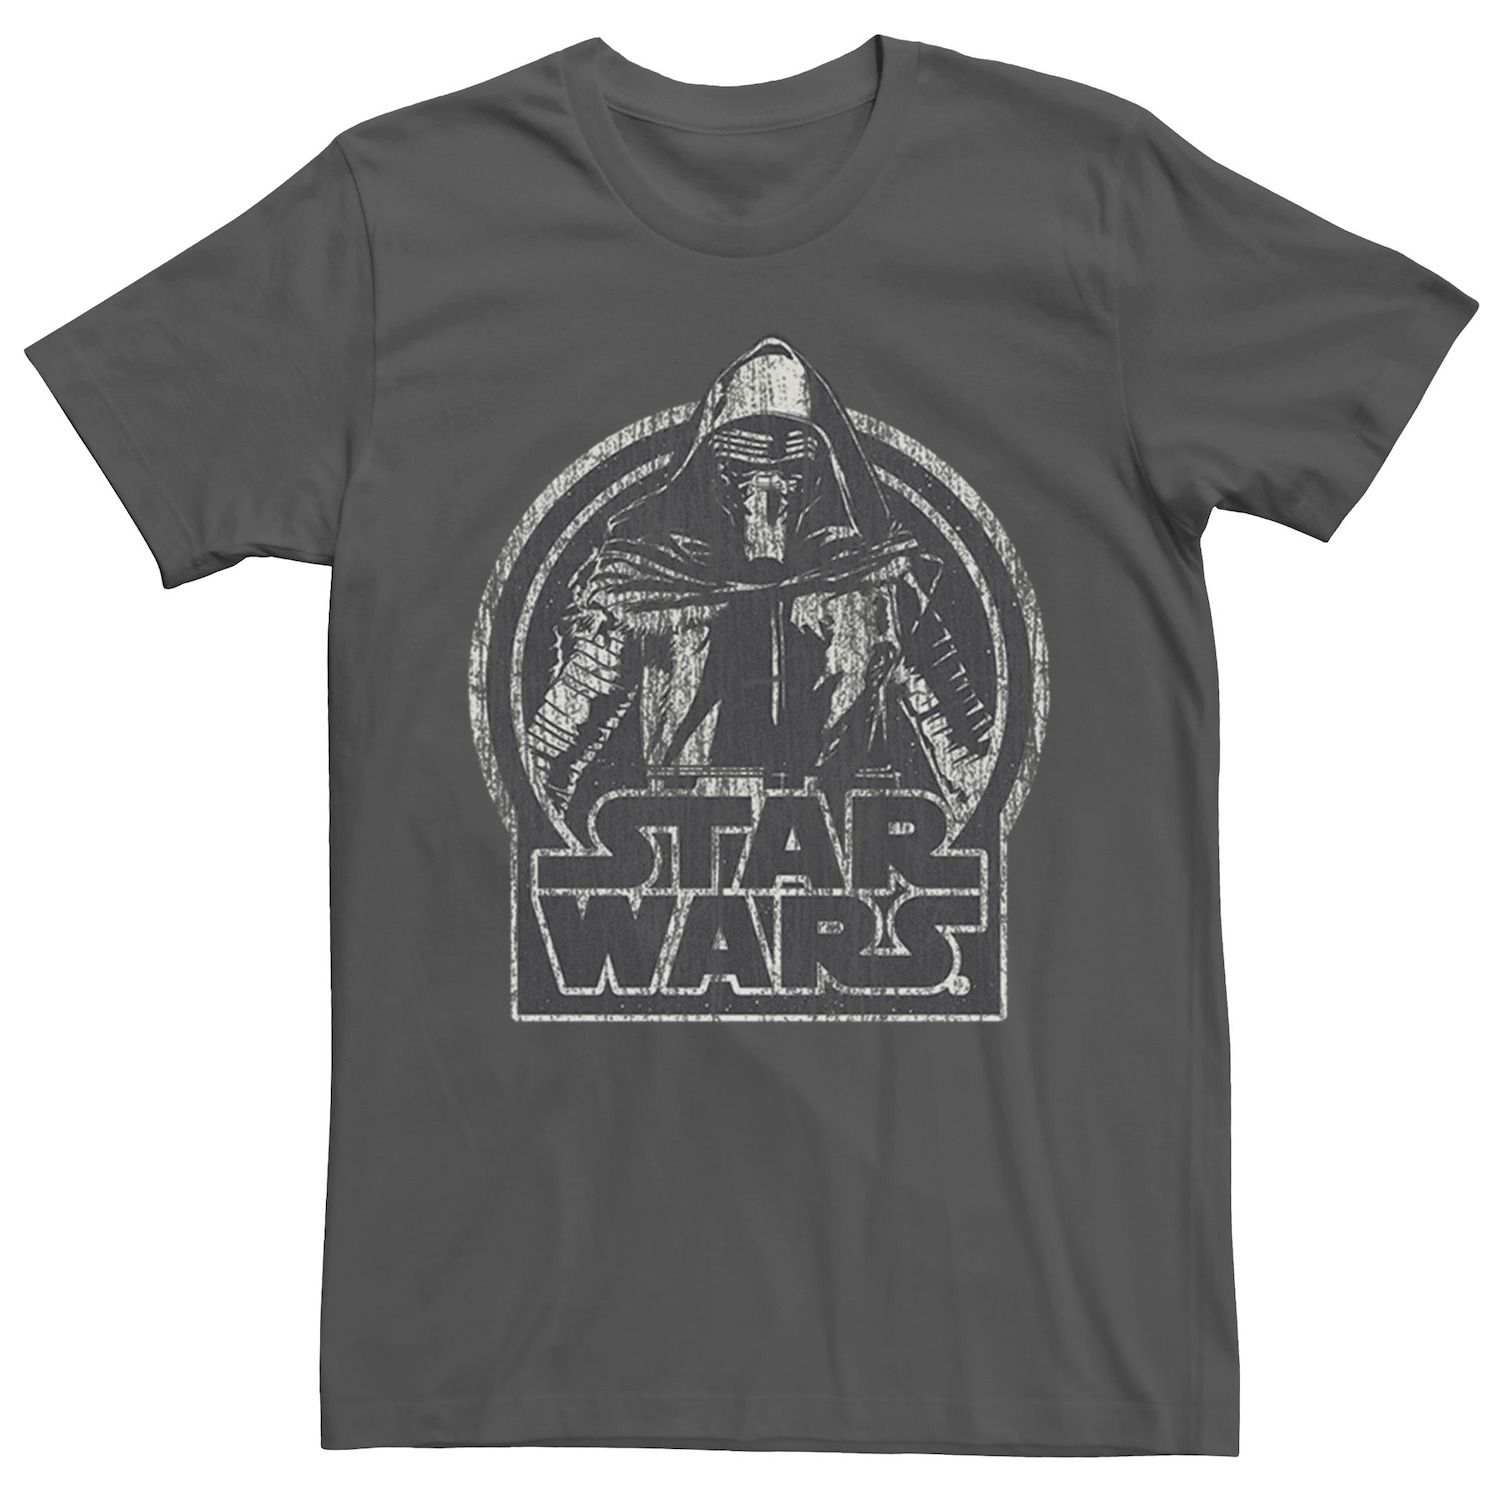 Мужская футболка с рисунком Kylo Ren и портретом Star Wars